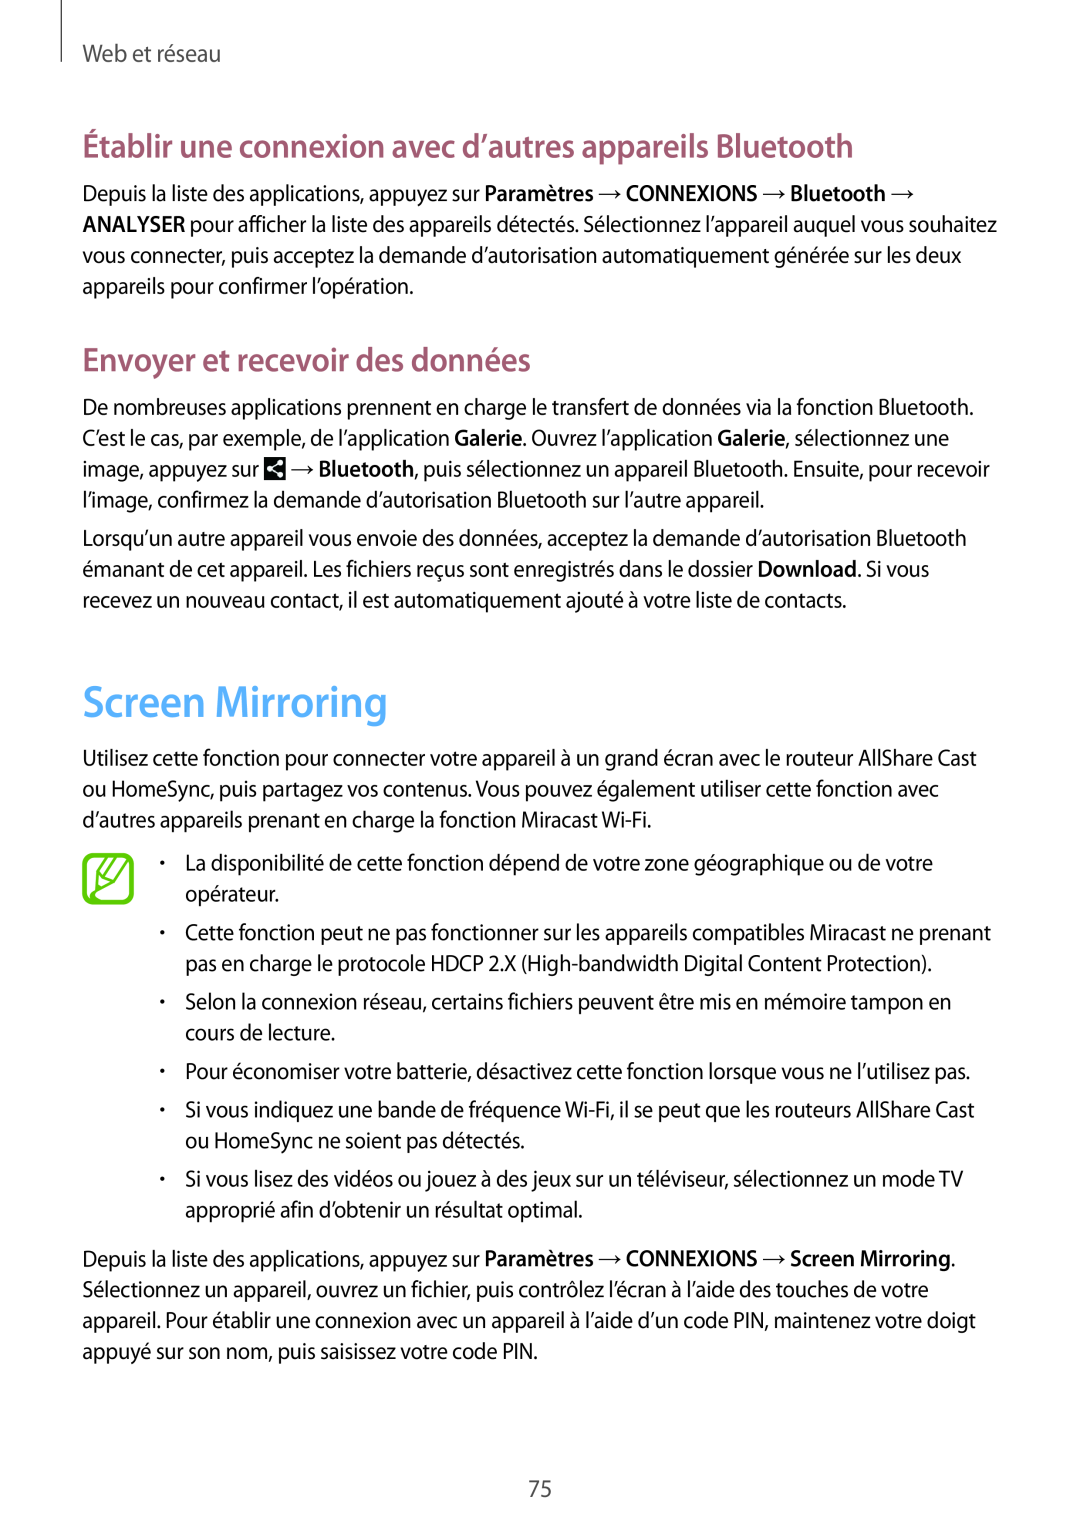 Samsung SM-P9050ZKAXEF manual Screen Mirroring, Établir une connexion avec d’autres appareils Bluetooth, Web et réseau 